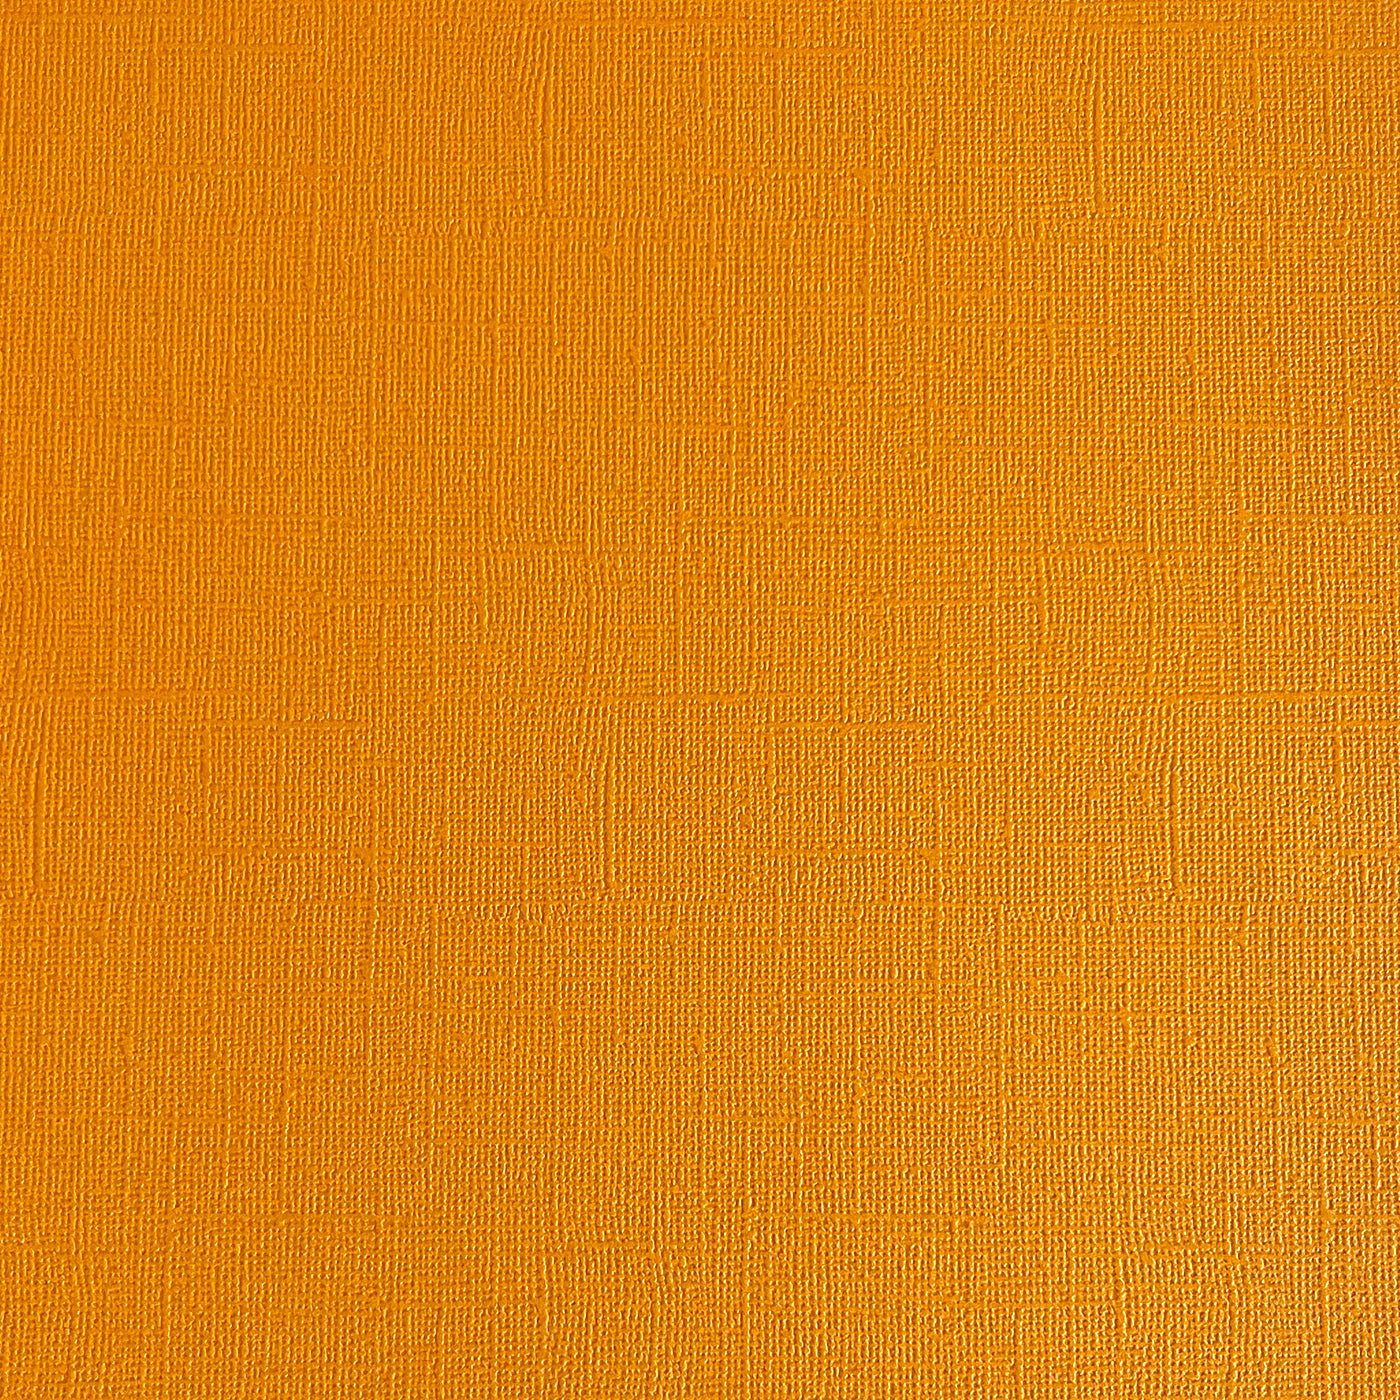 MANDARIN ORANGE - Textured 12x12 Cardstock - Encore Paper